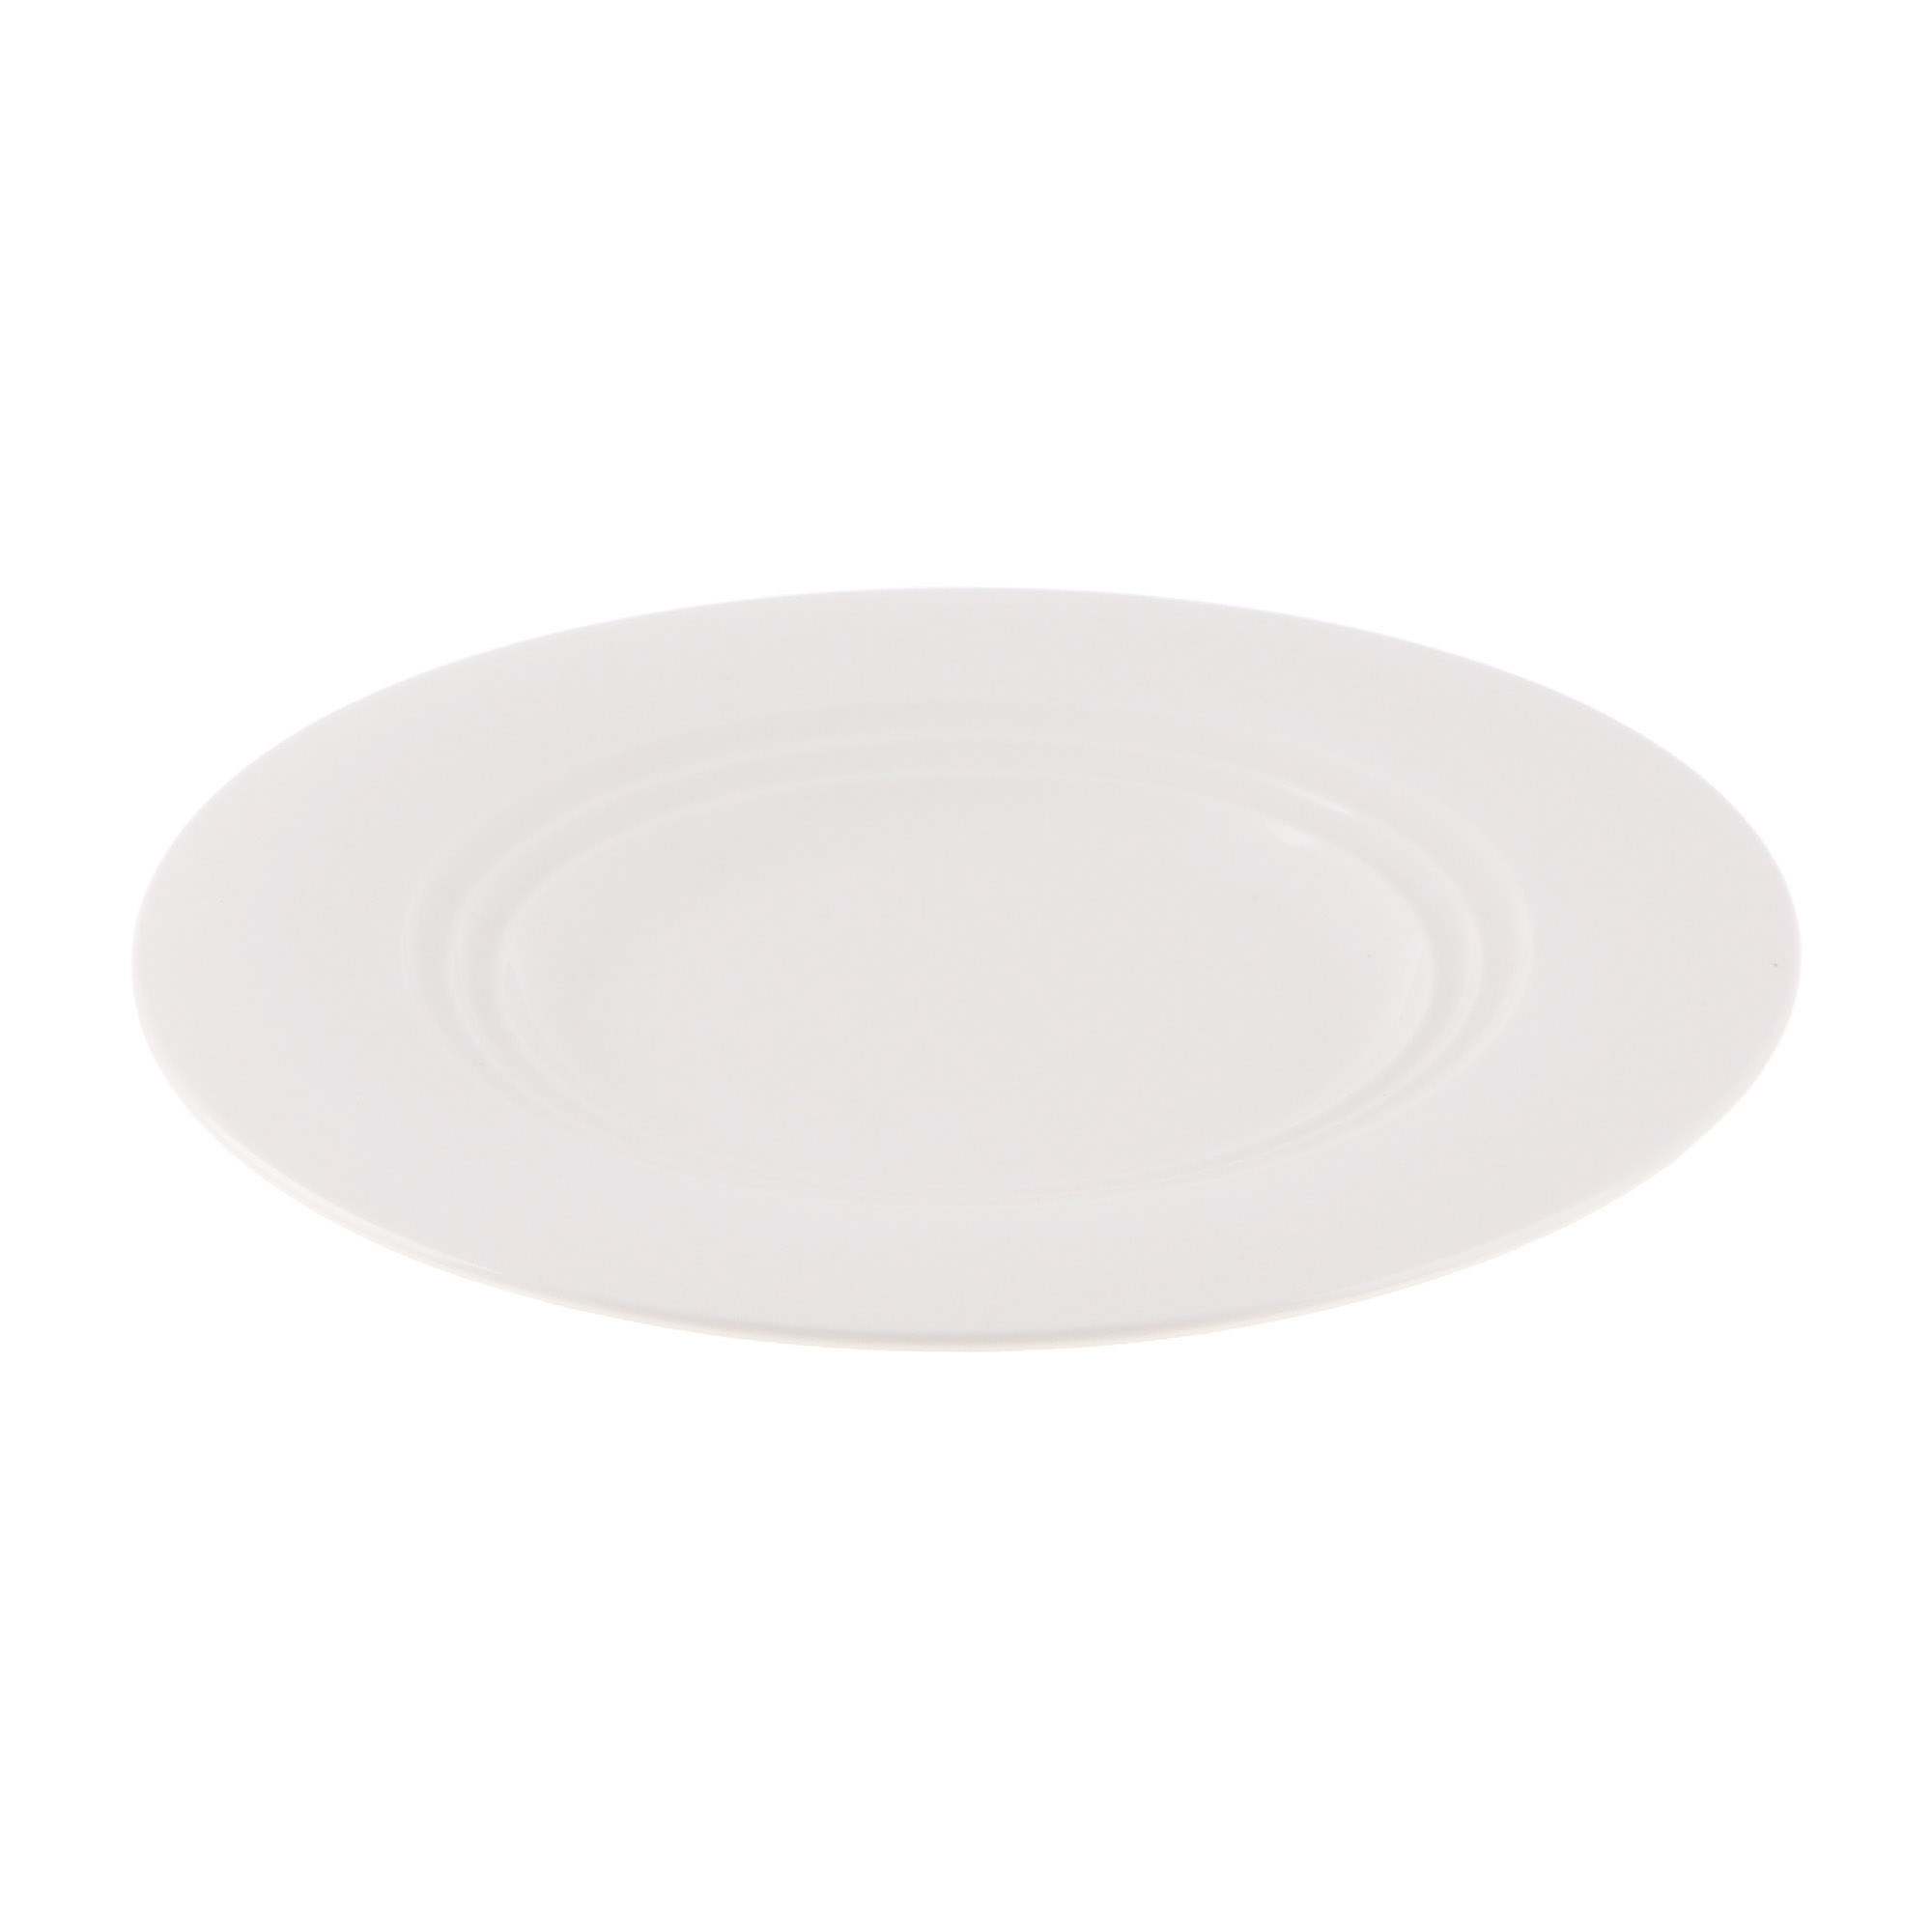 Тарелка Cameo Concentrics фарфор 21 см тарелка cameo square rim 30х30 см 710 121